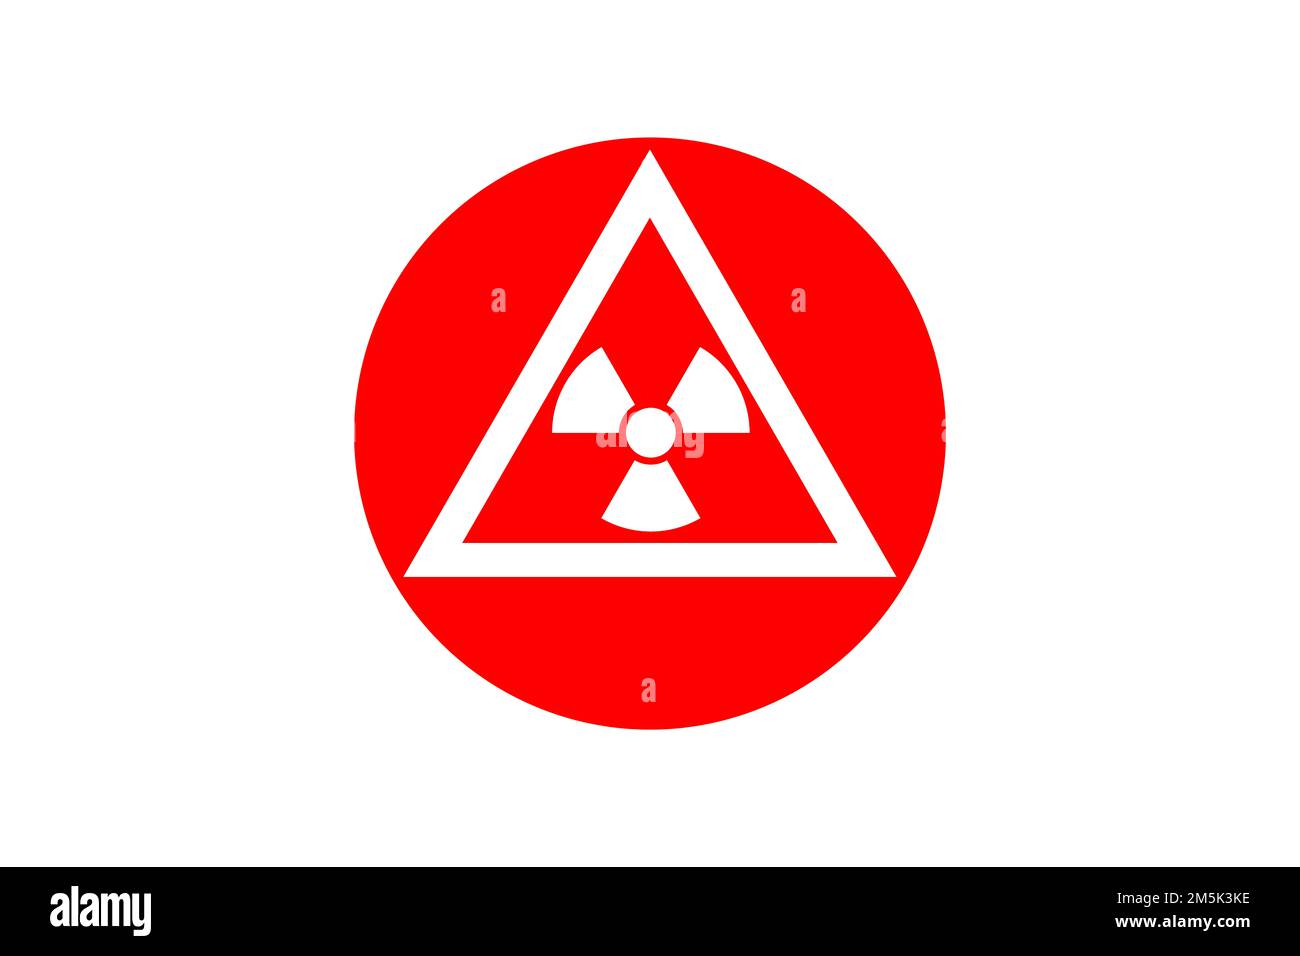 symbole de rayonnement utilisé pour les matières nucléaires, symbole de danger pour les matières ou zones radioactives. Symbole de radioactivité dans un cercle de couleur haute visibilité Banque D'Images